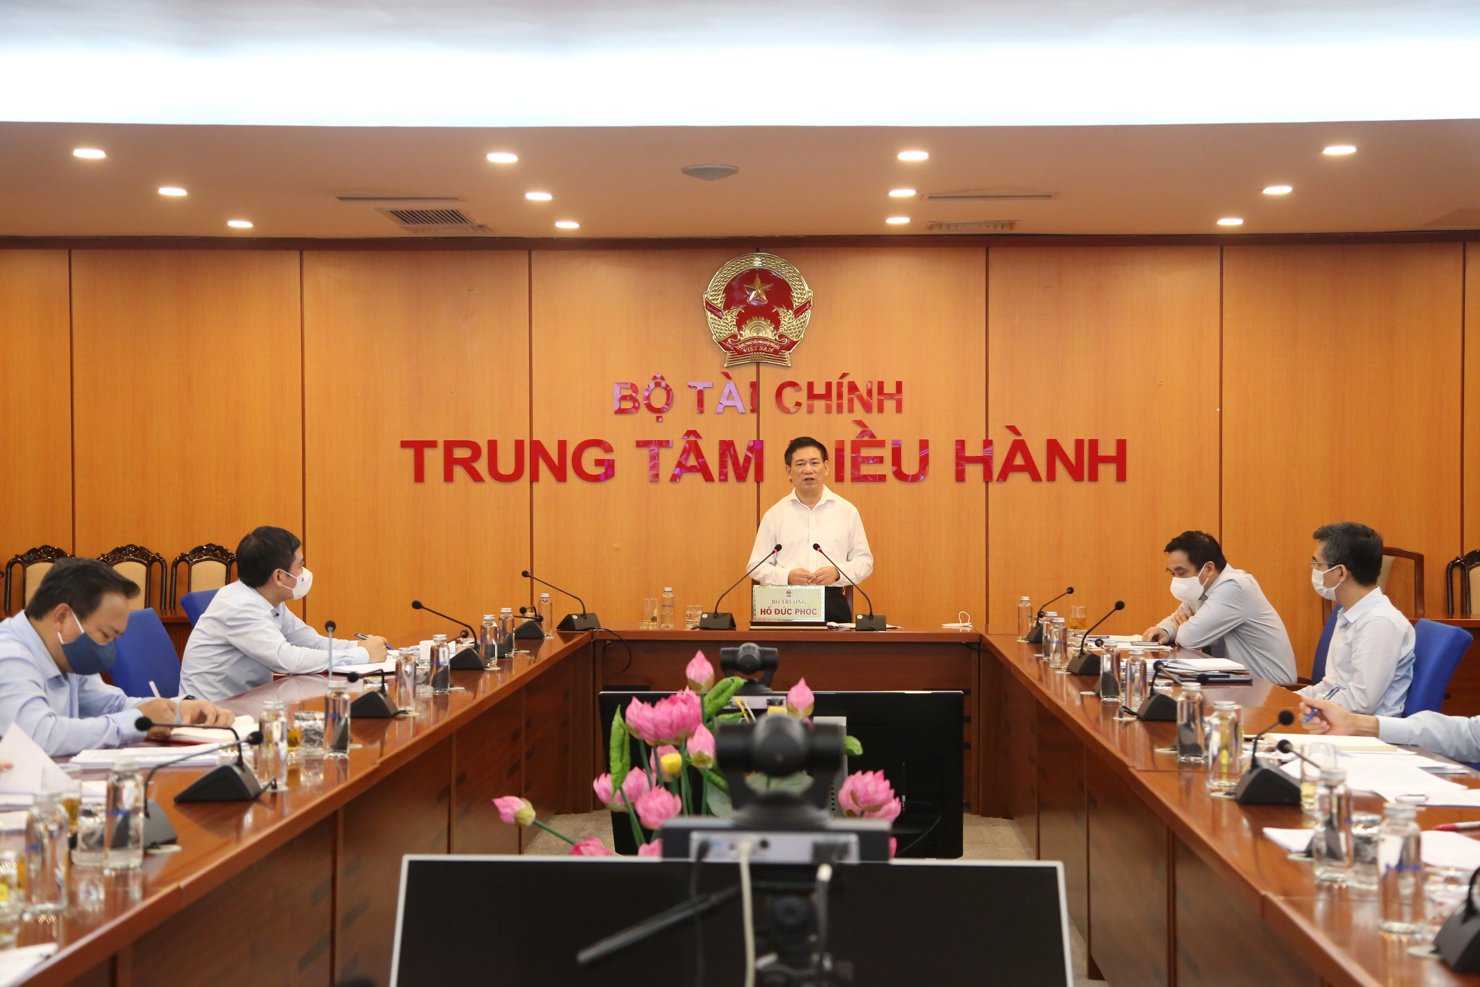 Bộ trưởng Bộ Tài chính Hồ Đức Phớc phát biểu chỉ đạo tại điểm cầu Bộ Tài chính.